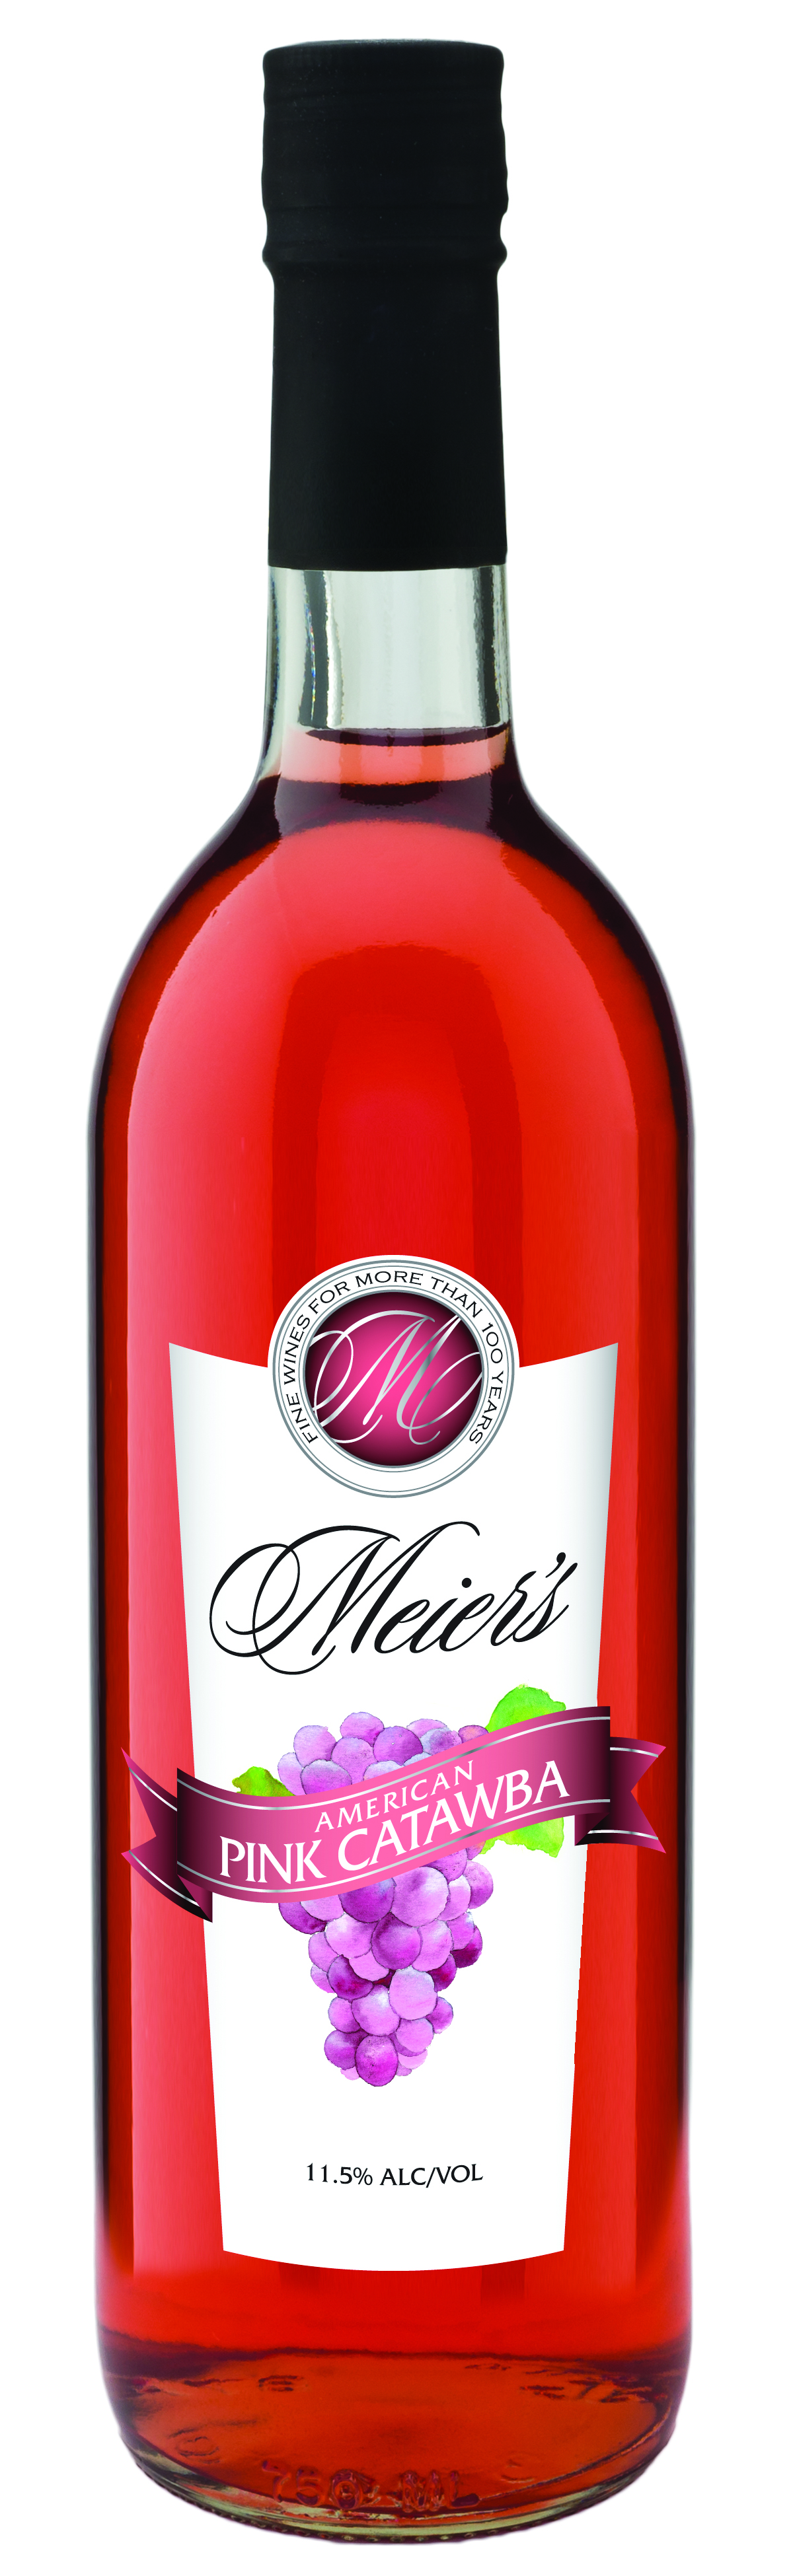 Meier's Pink Catawba Wine